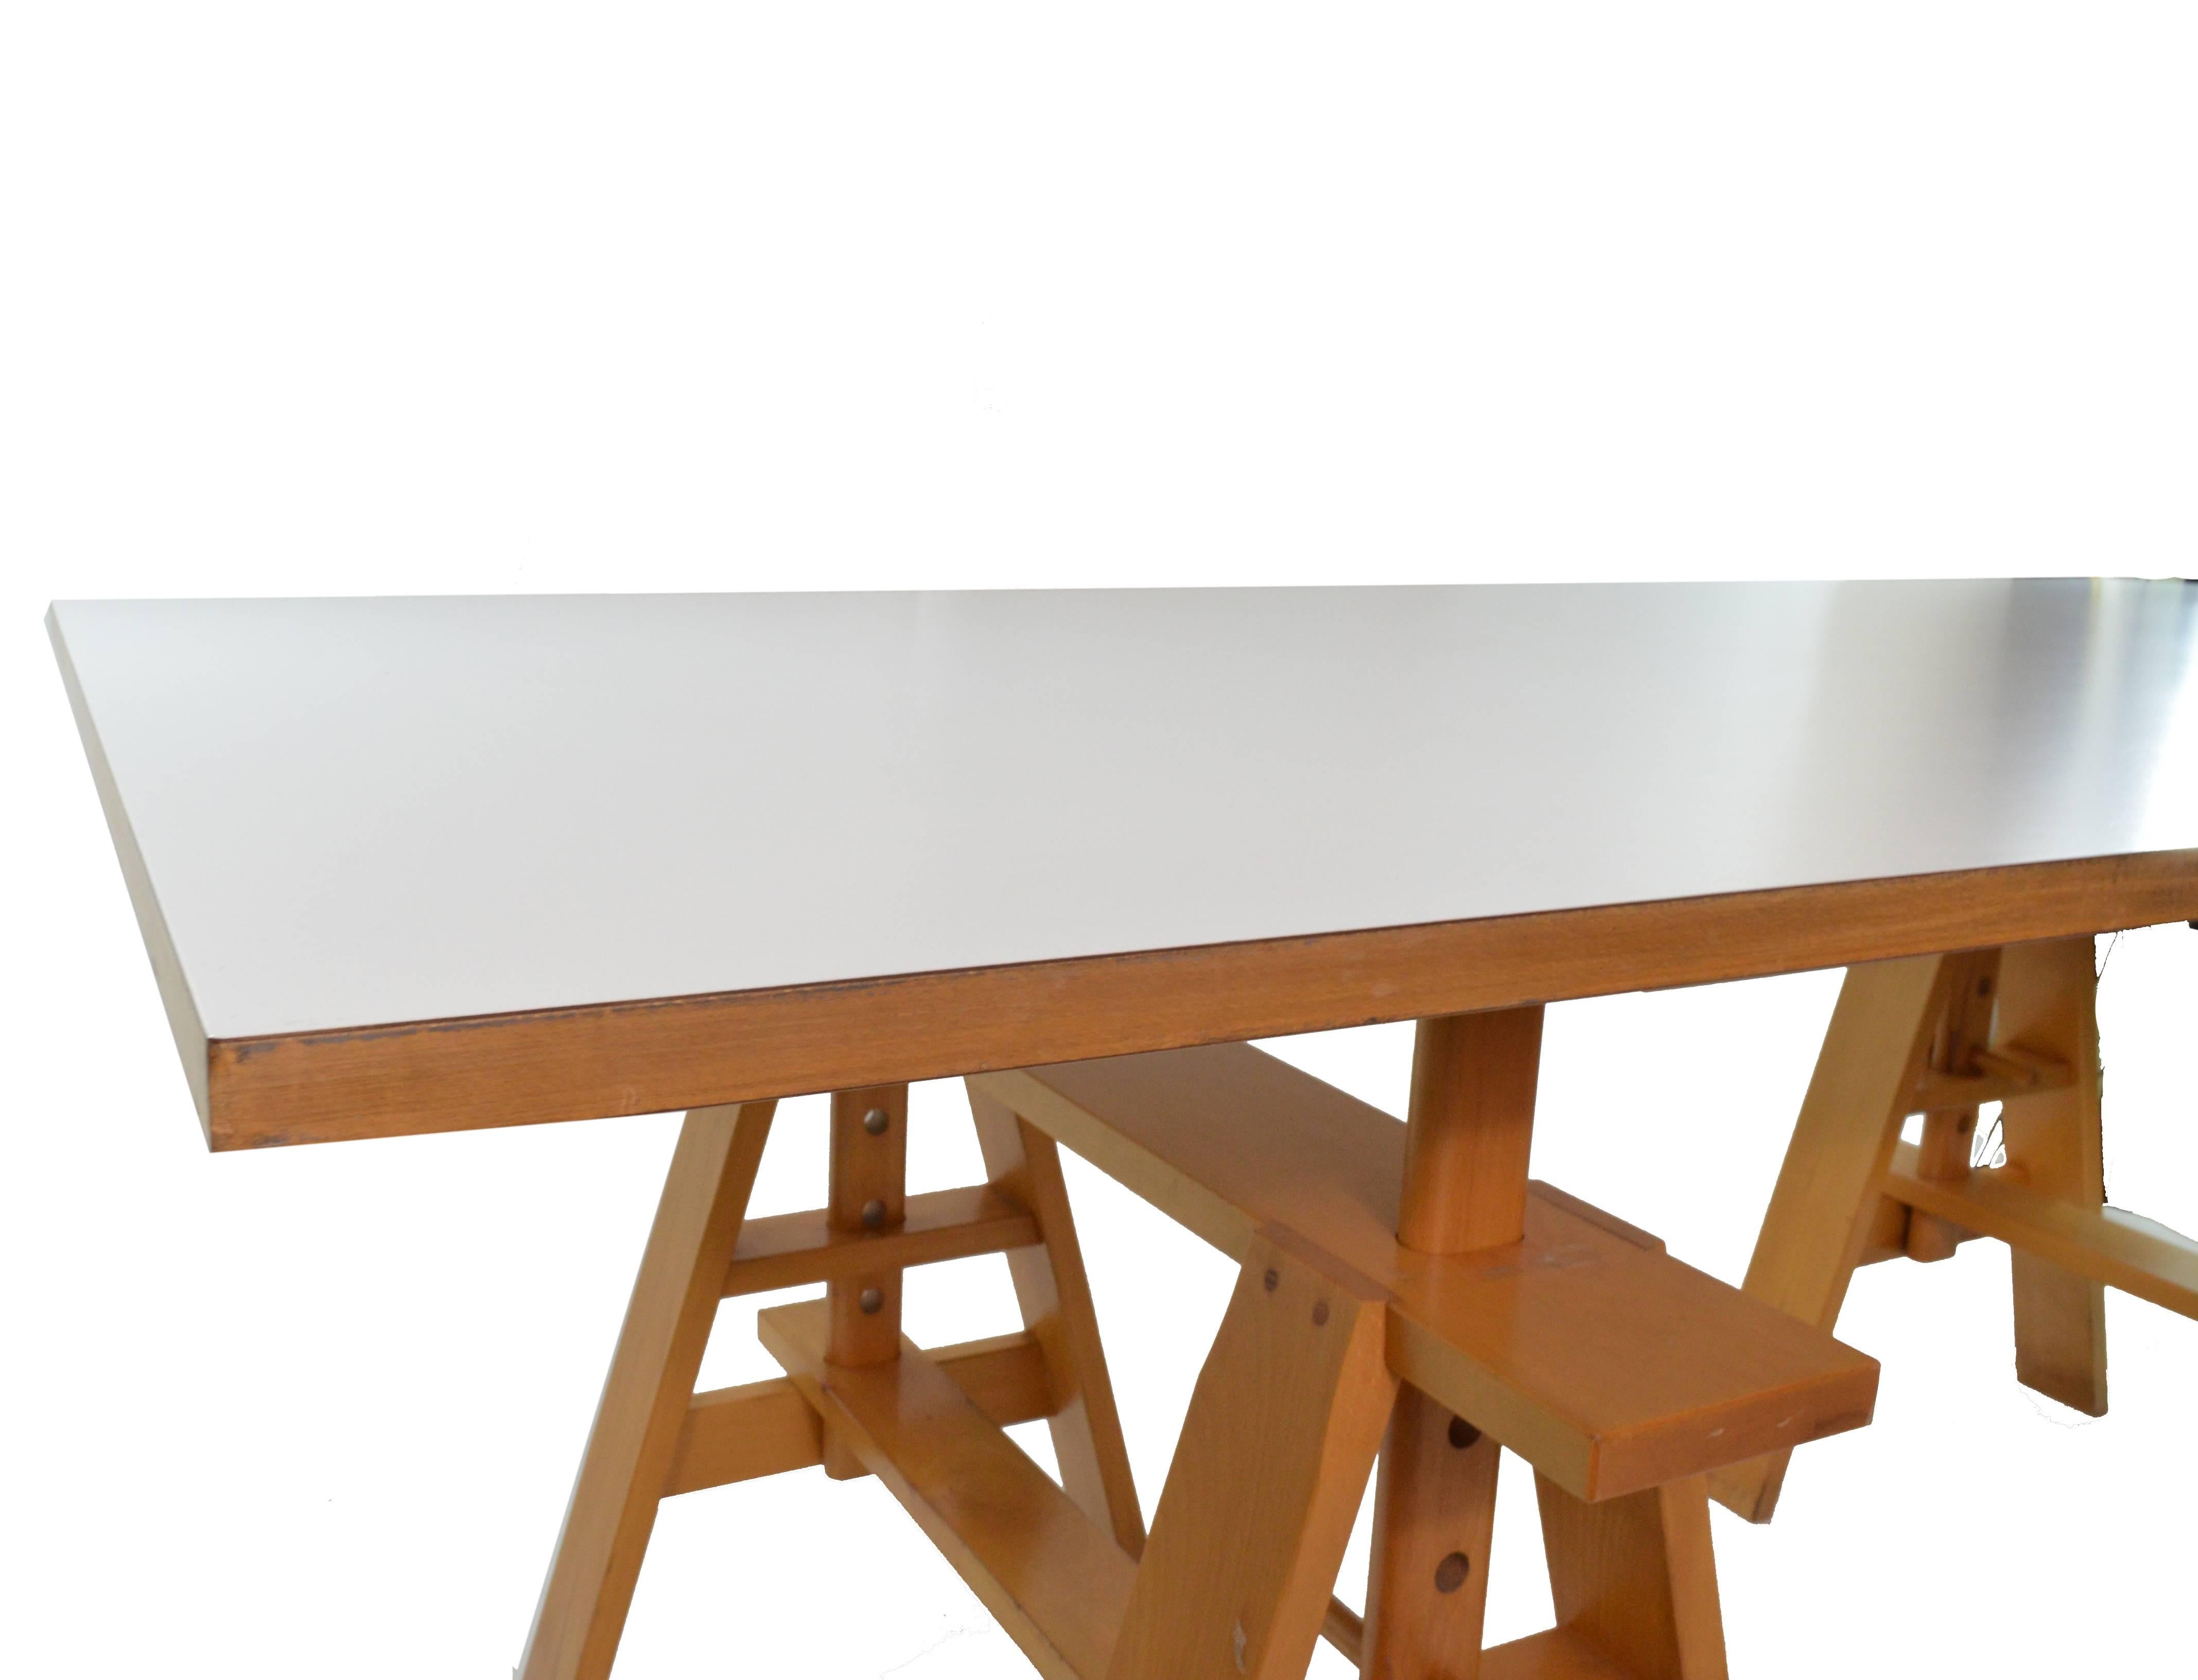 Wood Leonardo Table Designed by Achille Castiglioni